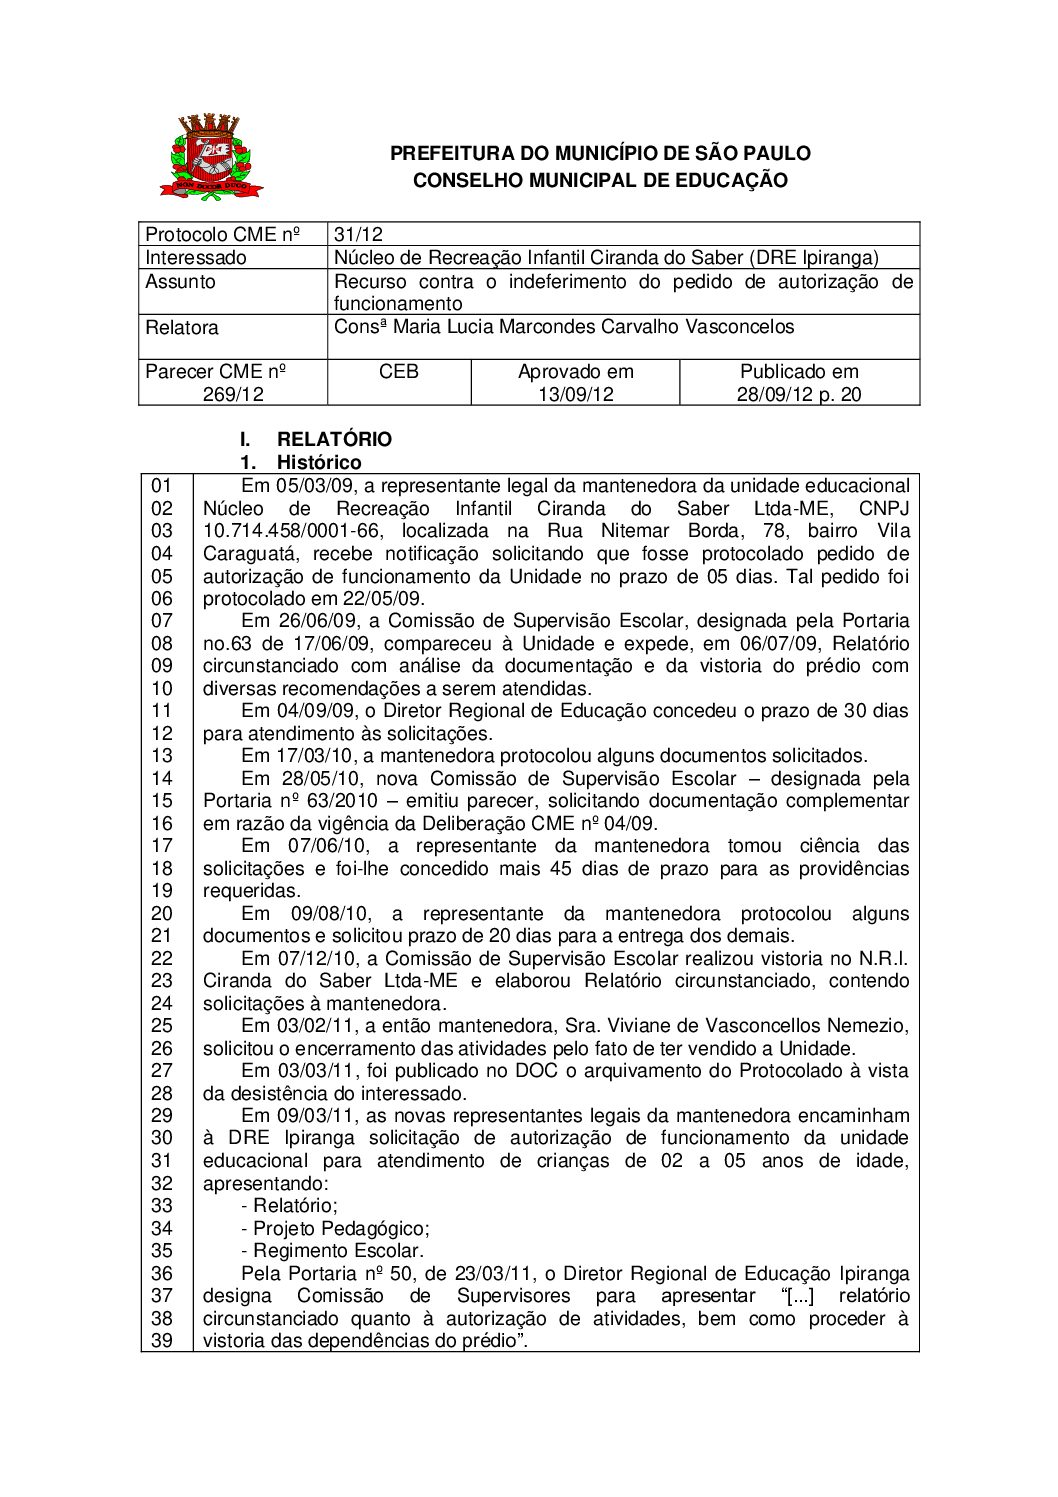 Parecer CME nº 269/2012 - Núcleo de Recreação Infantil Ciranda do Saber (DRE Ipiranga) - Recurso contra o indeferimento do pedido de autorização de funcionamento 